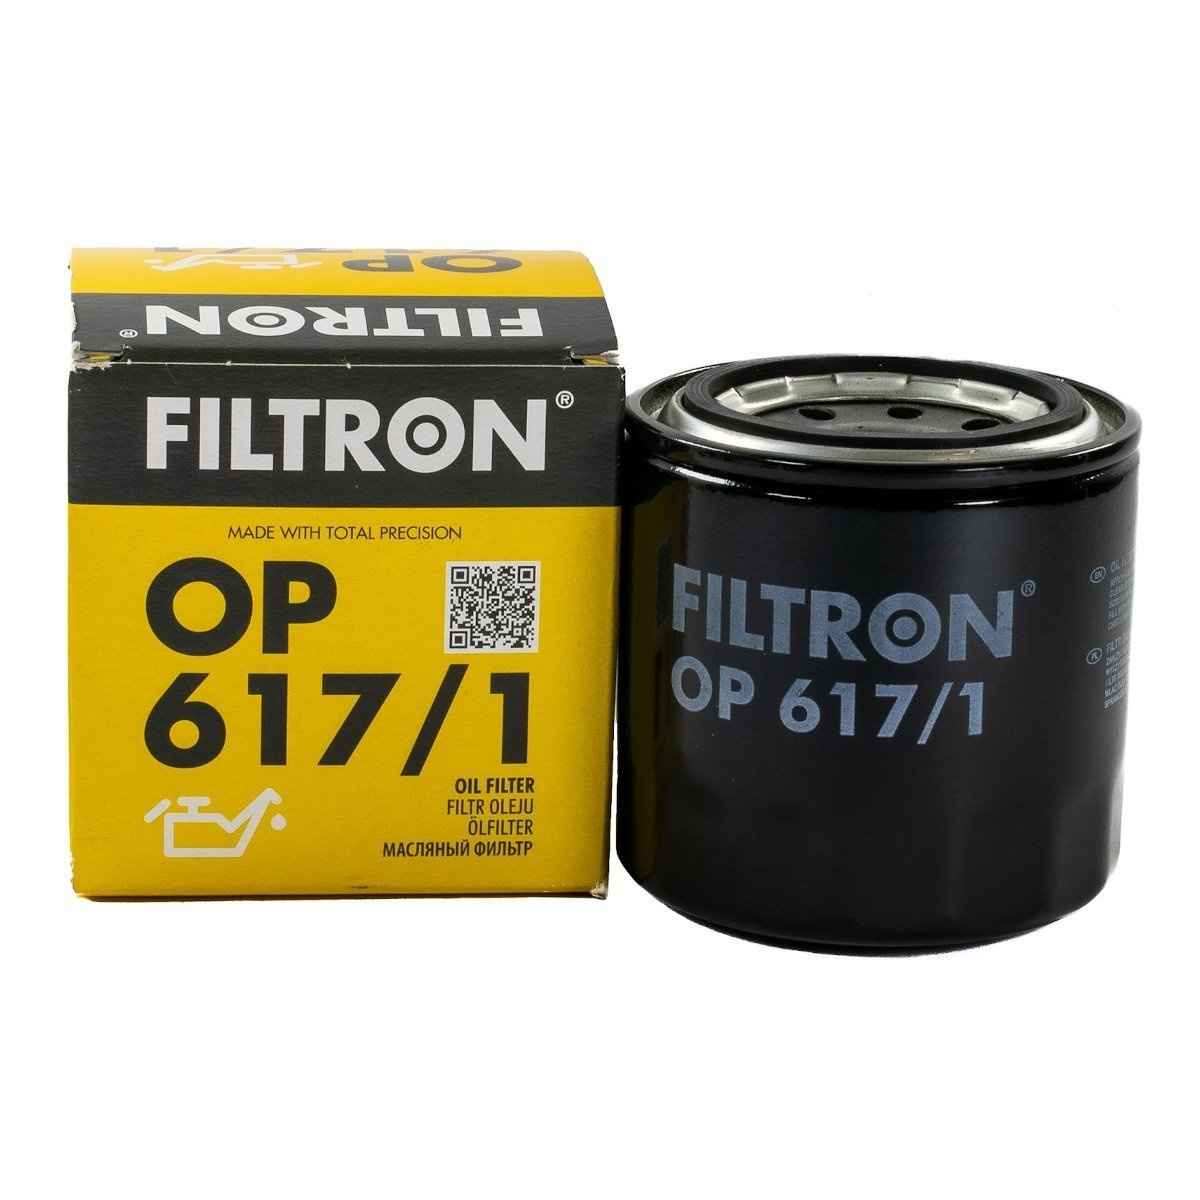 FILTRON filtr oleju OP617/1 Hyundai Kia • autokosmetyki